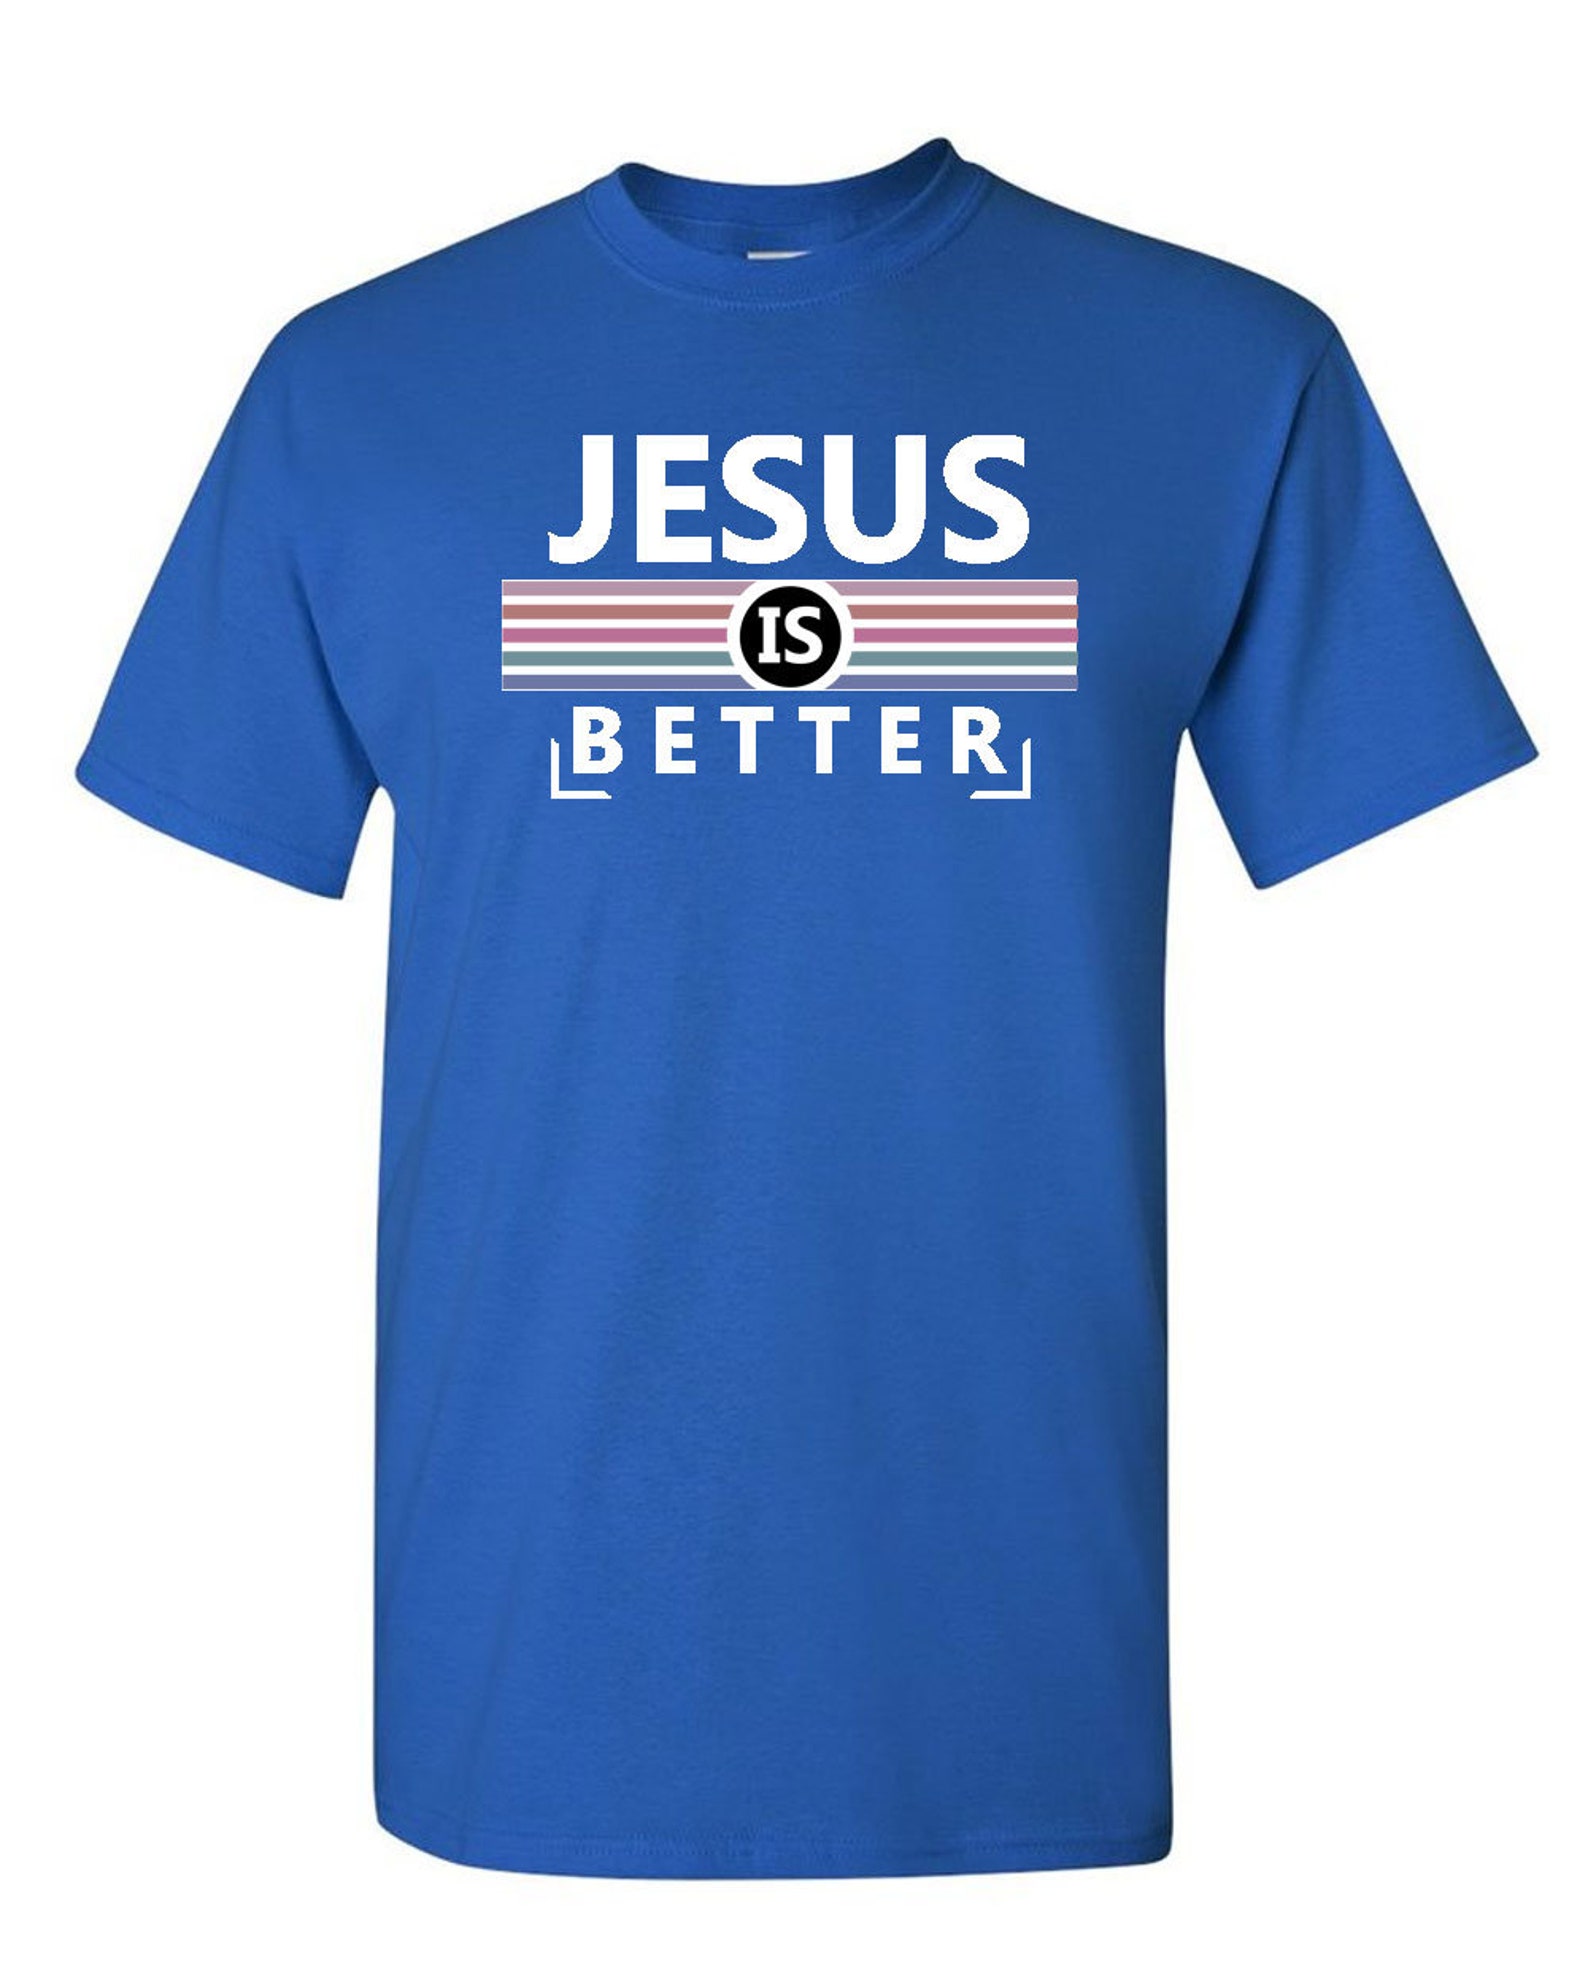 Jesus is Better T-shirt Christian Religious T-shirt | Etsy